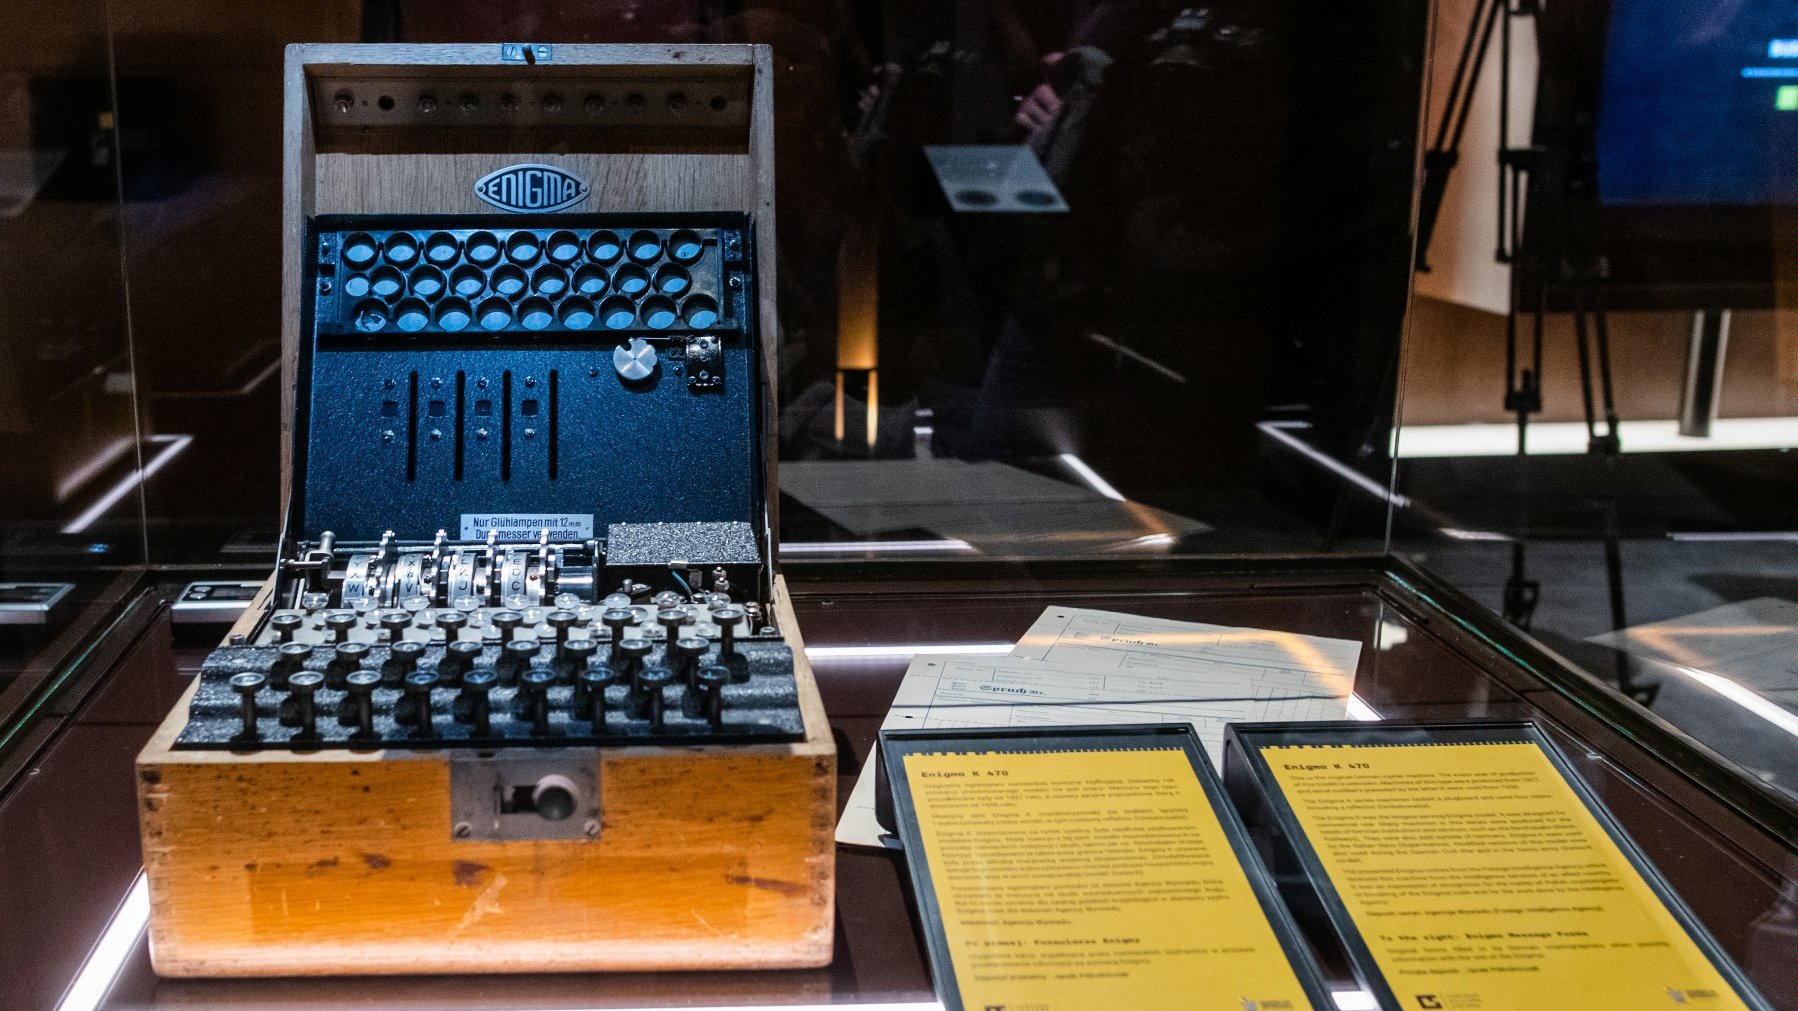 Zdjęcie przedstawia niemiecką maszynę szyfrującą Enigma umieszczoną w gablocie. Obok urządzenia widać dwie tabliczki informacyjne z opisem.